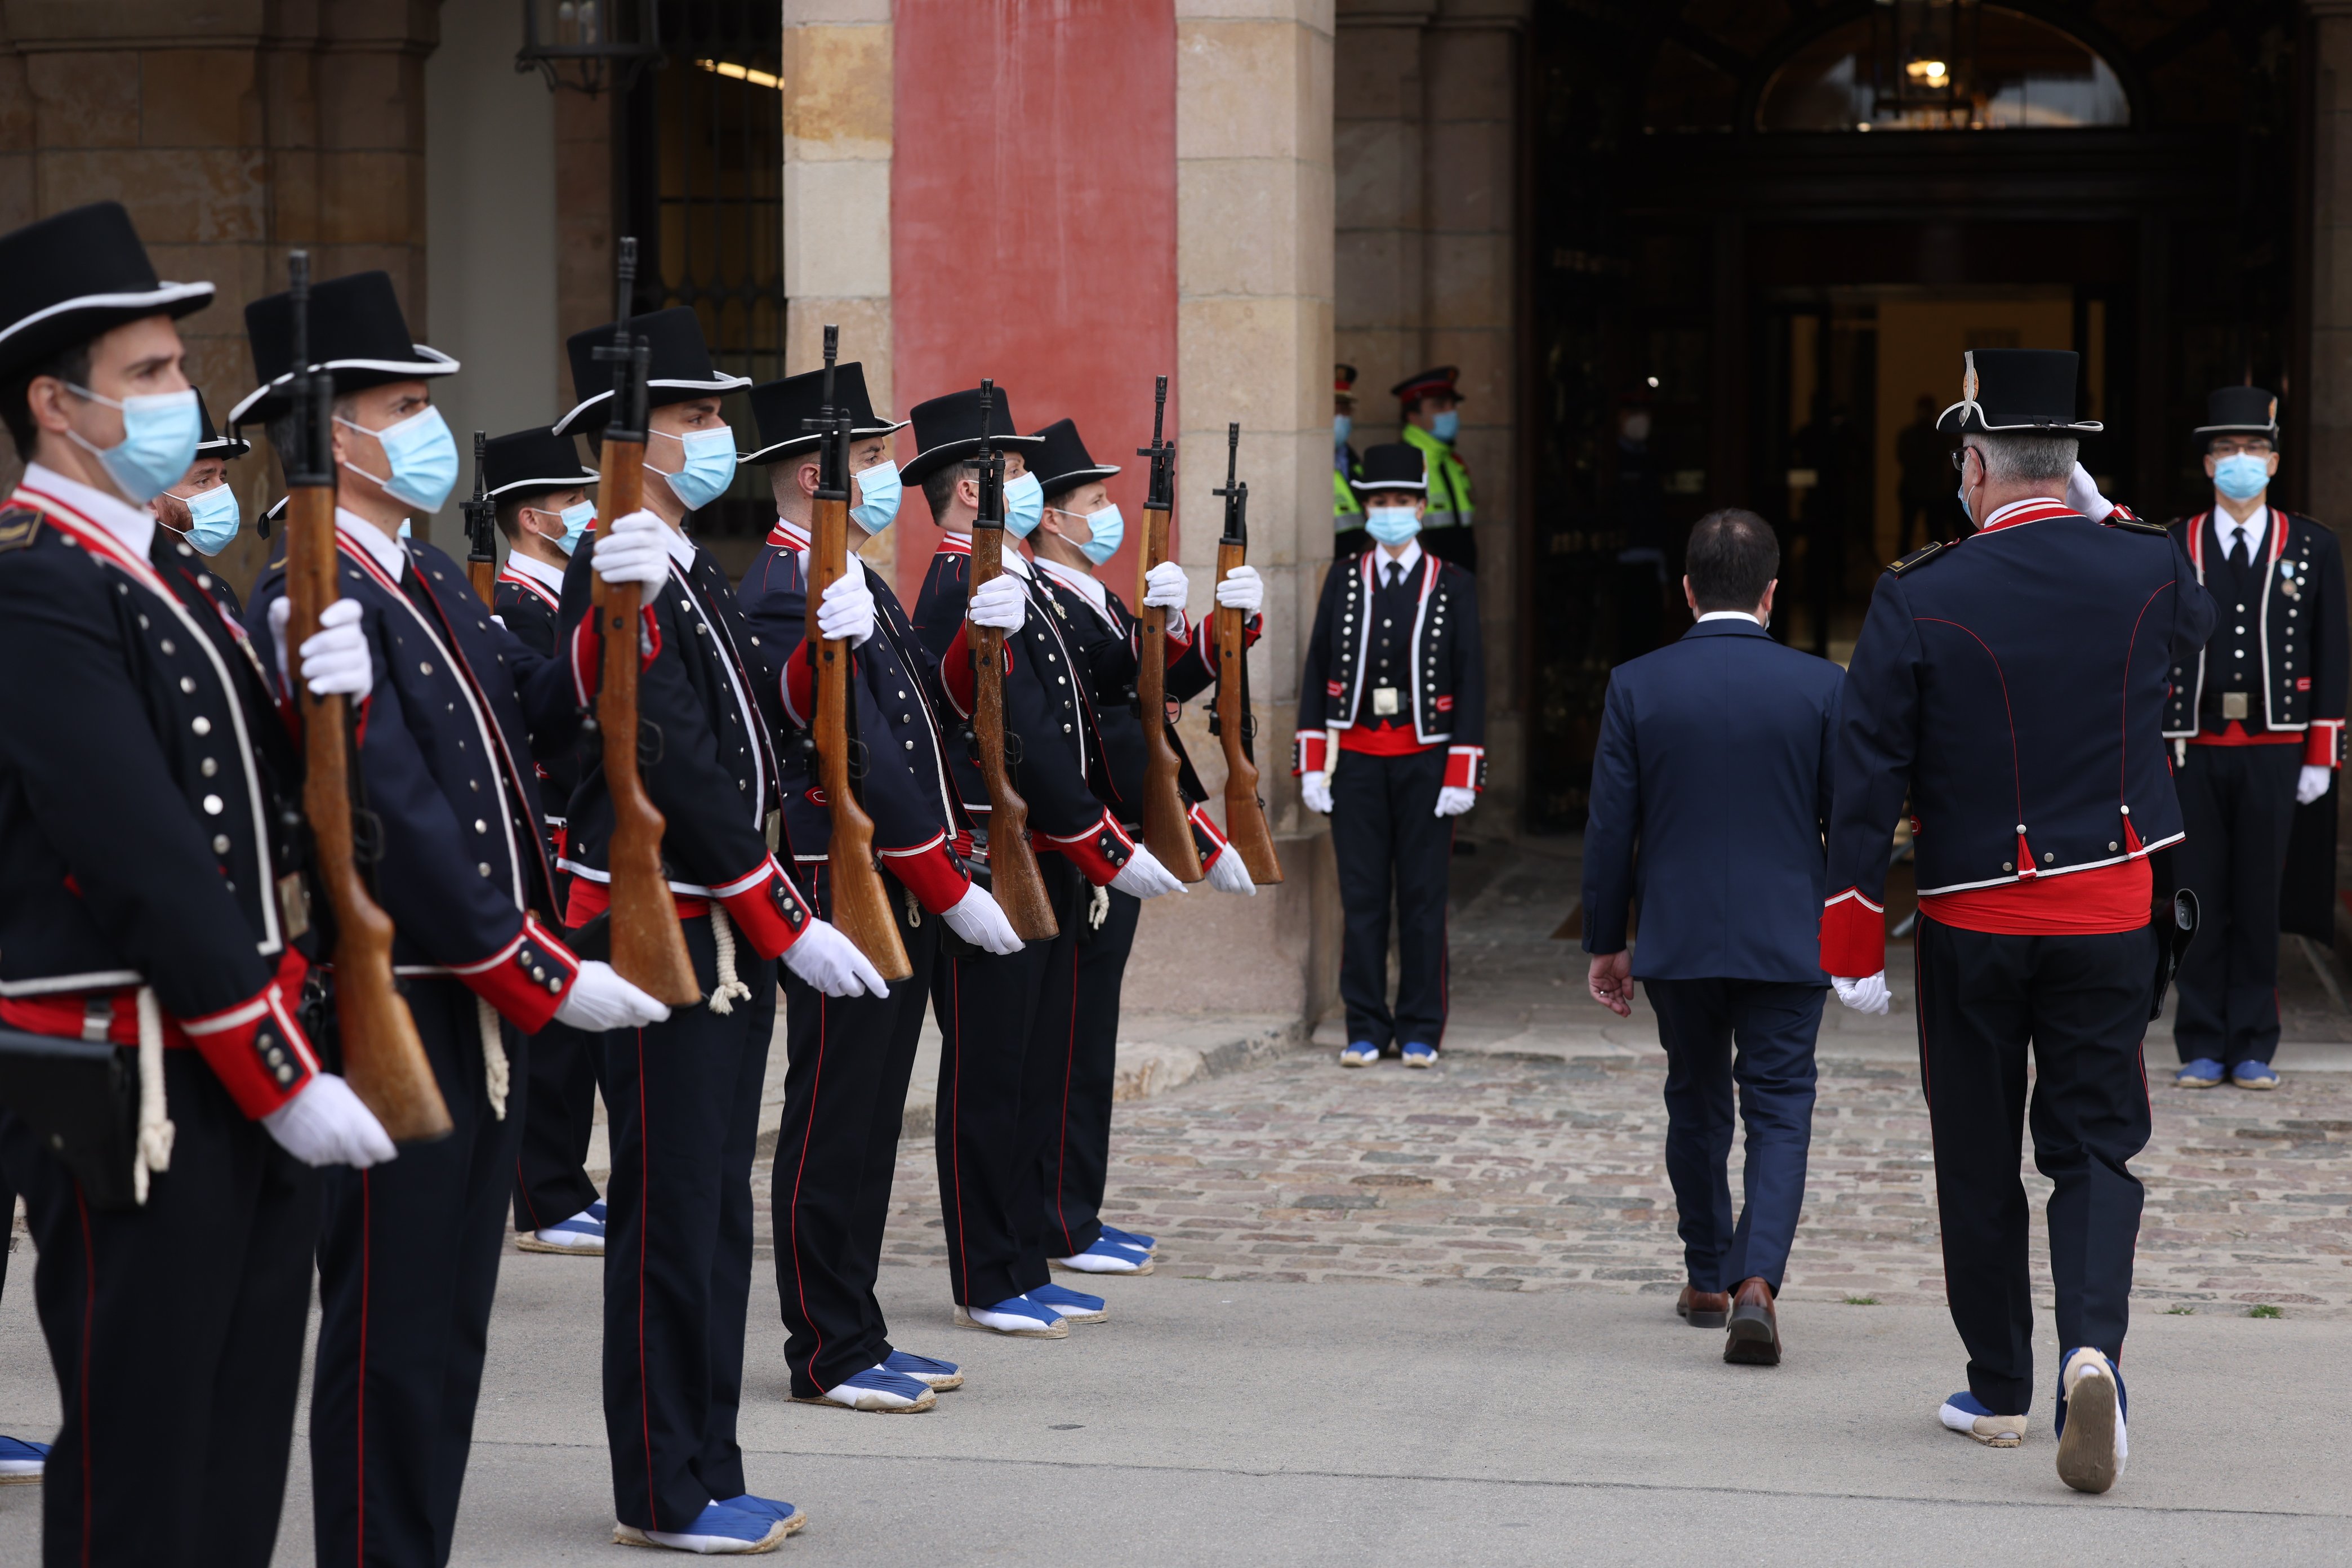 Aragonès prescindirà del grup especial d'escortes del president creat per Torra